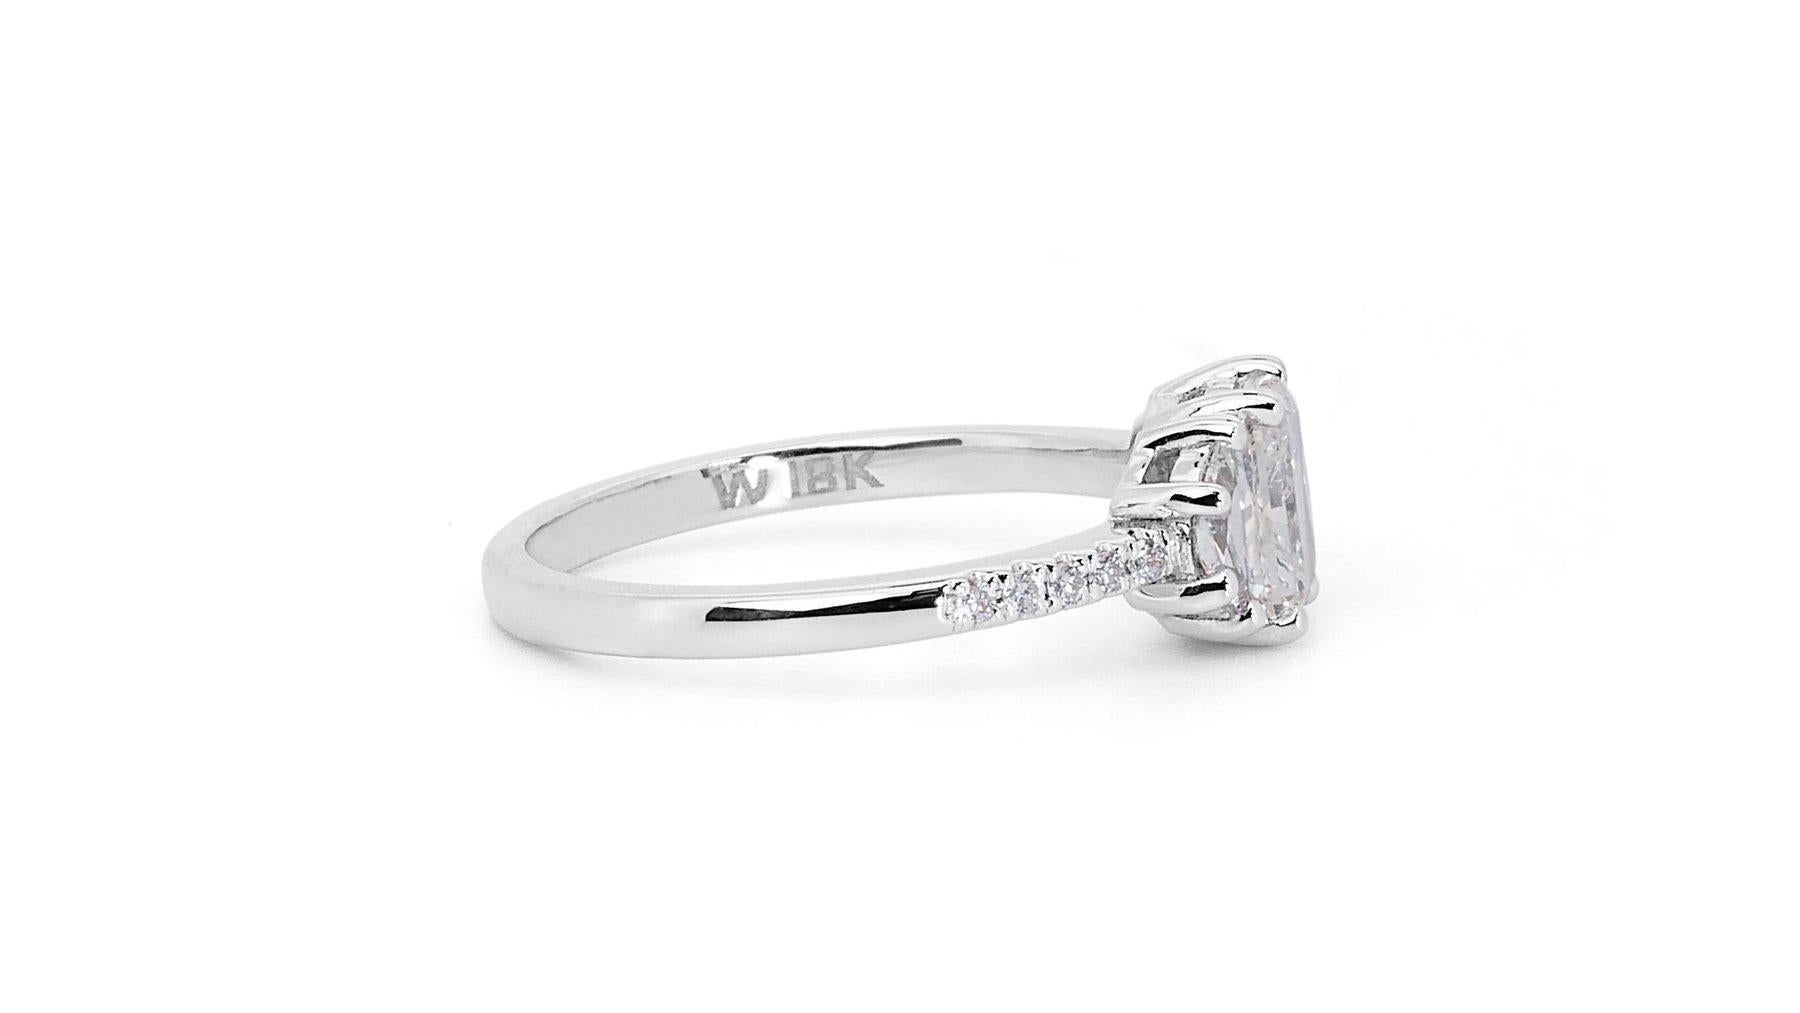 Eleganter 1,32 Karat Diamant-Pavé-Ring aus 18 Karat Weißgold - GIA zertifiziert

Dieser raffinierte Diamantring aus 18-karätigem Weißgold präsentiert einen atemberaubenden rechteckigen Diamanten von 1,01 Karat mit einem Schliff in der Ecke.